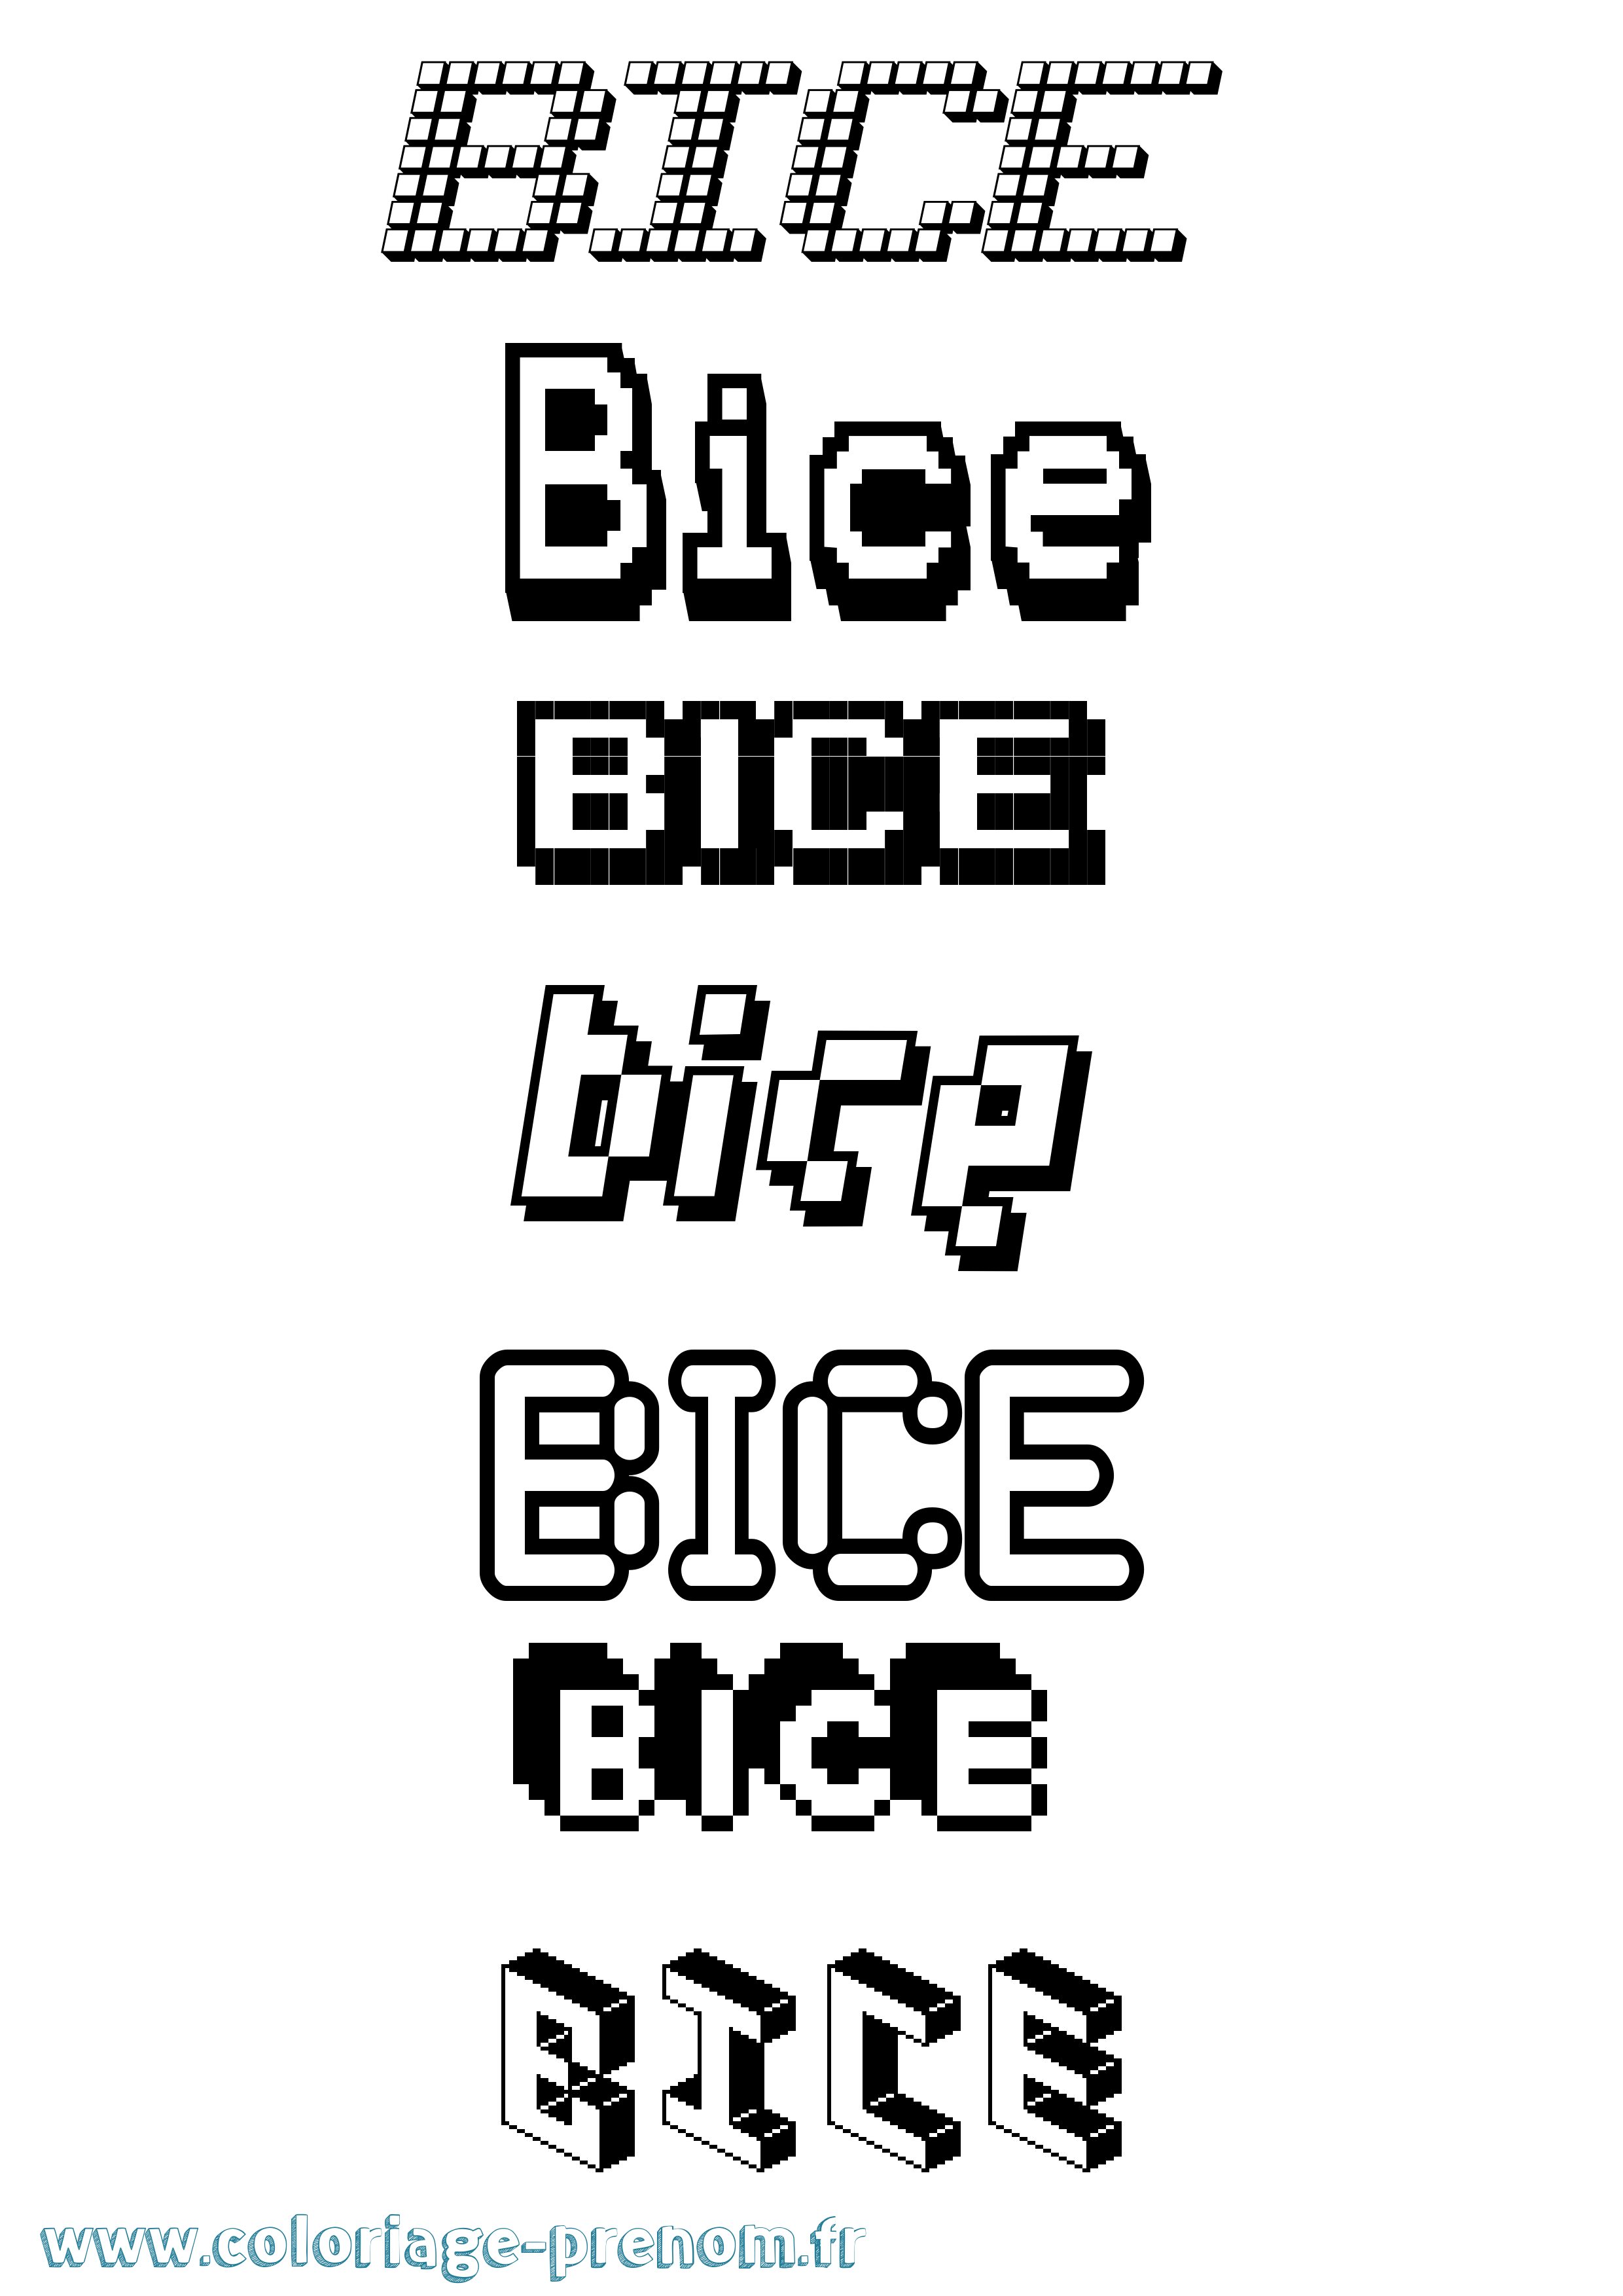 Coloriage prénom Bice Pixel